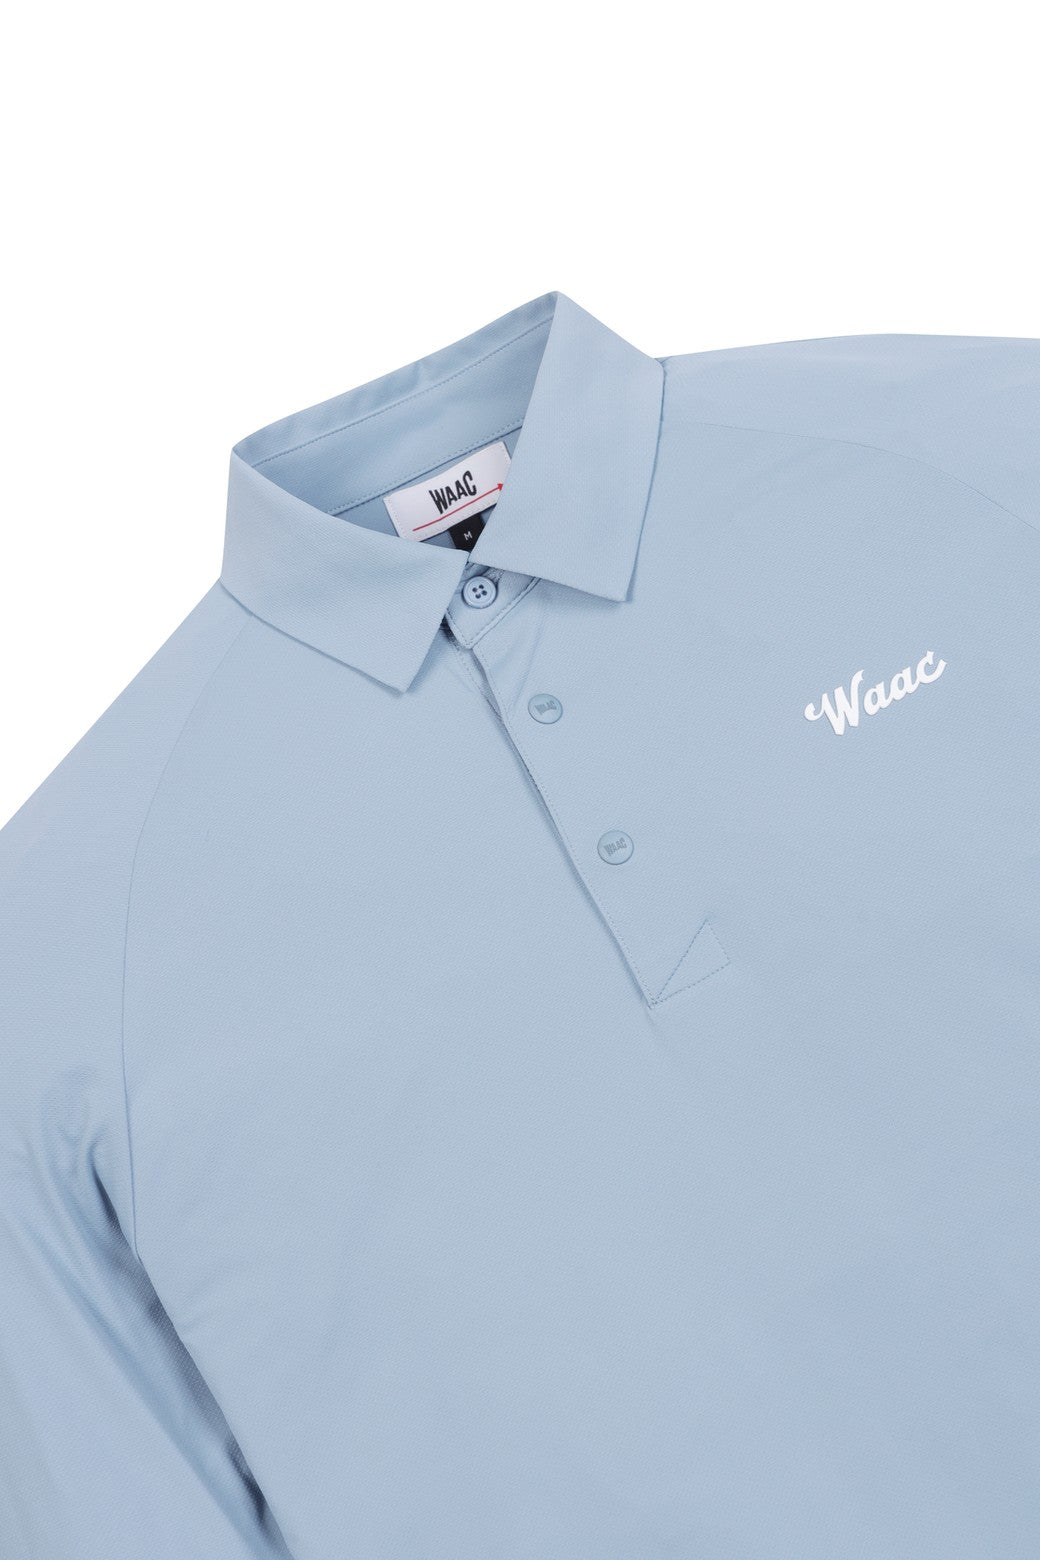 WAAC 男士 WAAC 標誌 LS Polo 衫-WMTBM24200SBX